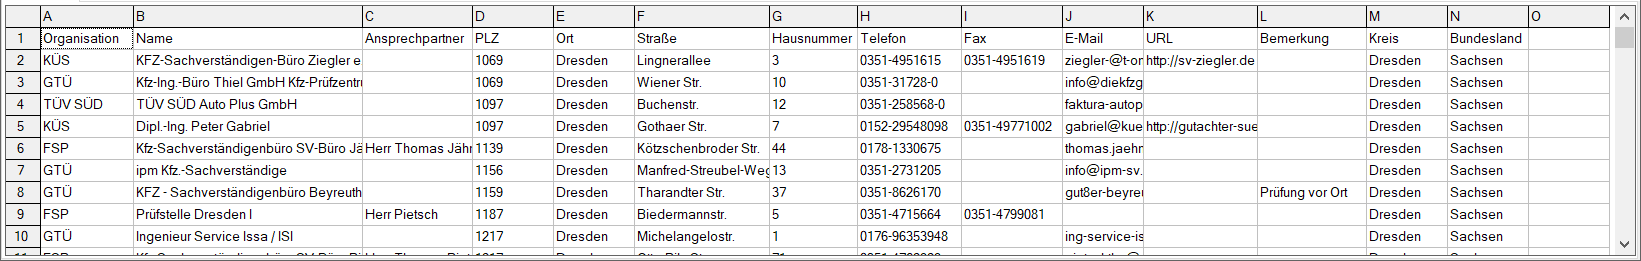 Datenbeispiel Adressen und Standorte der HU-Prüfstellen (TÜV) in Deutschland